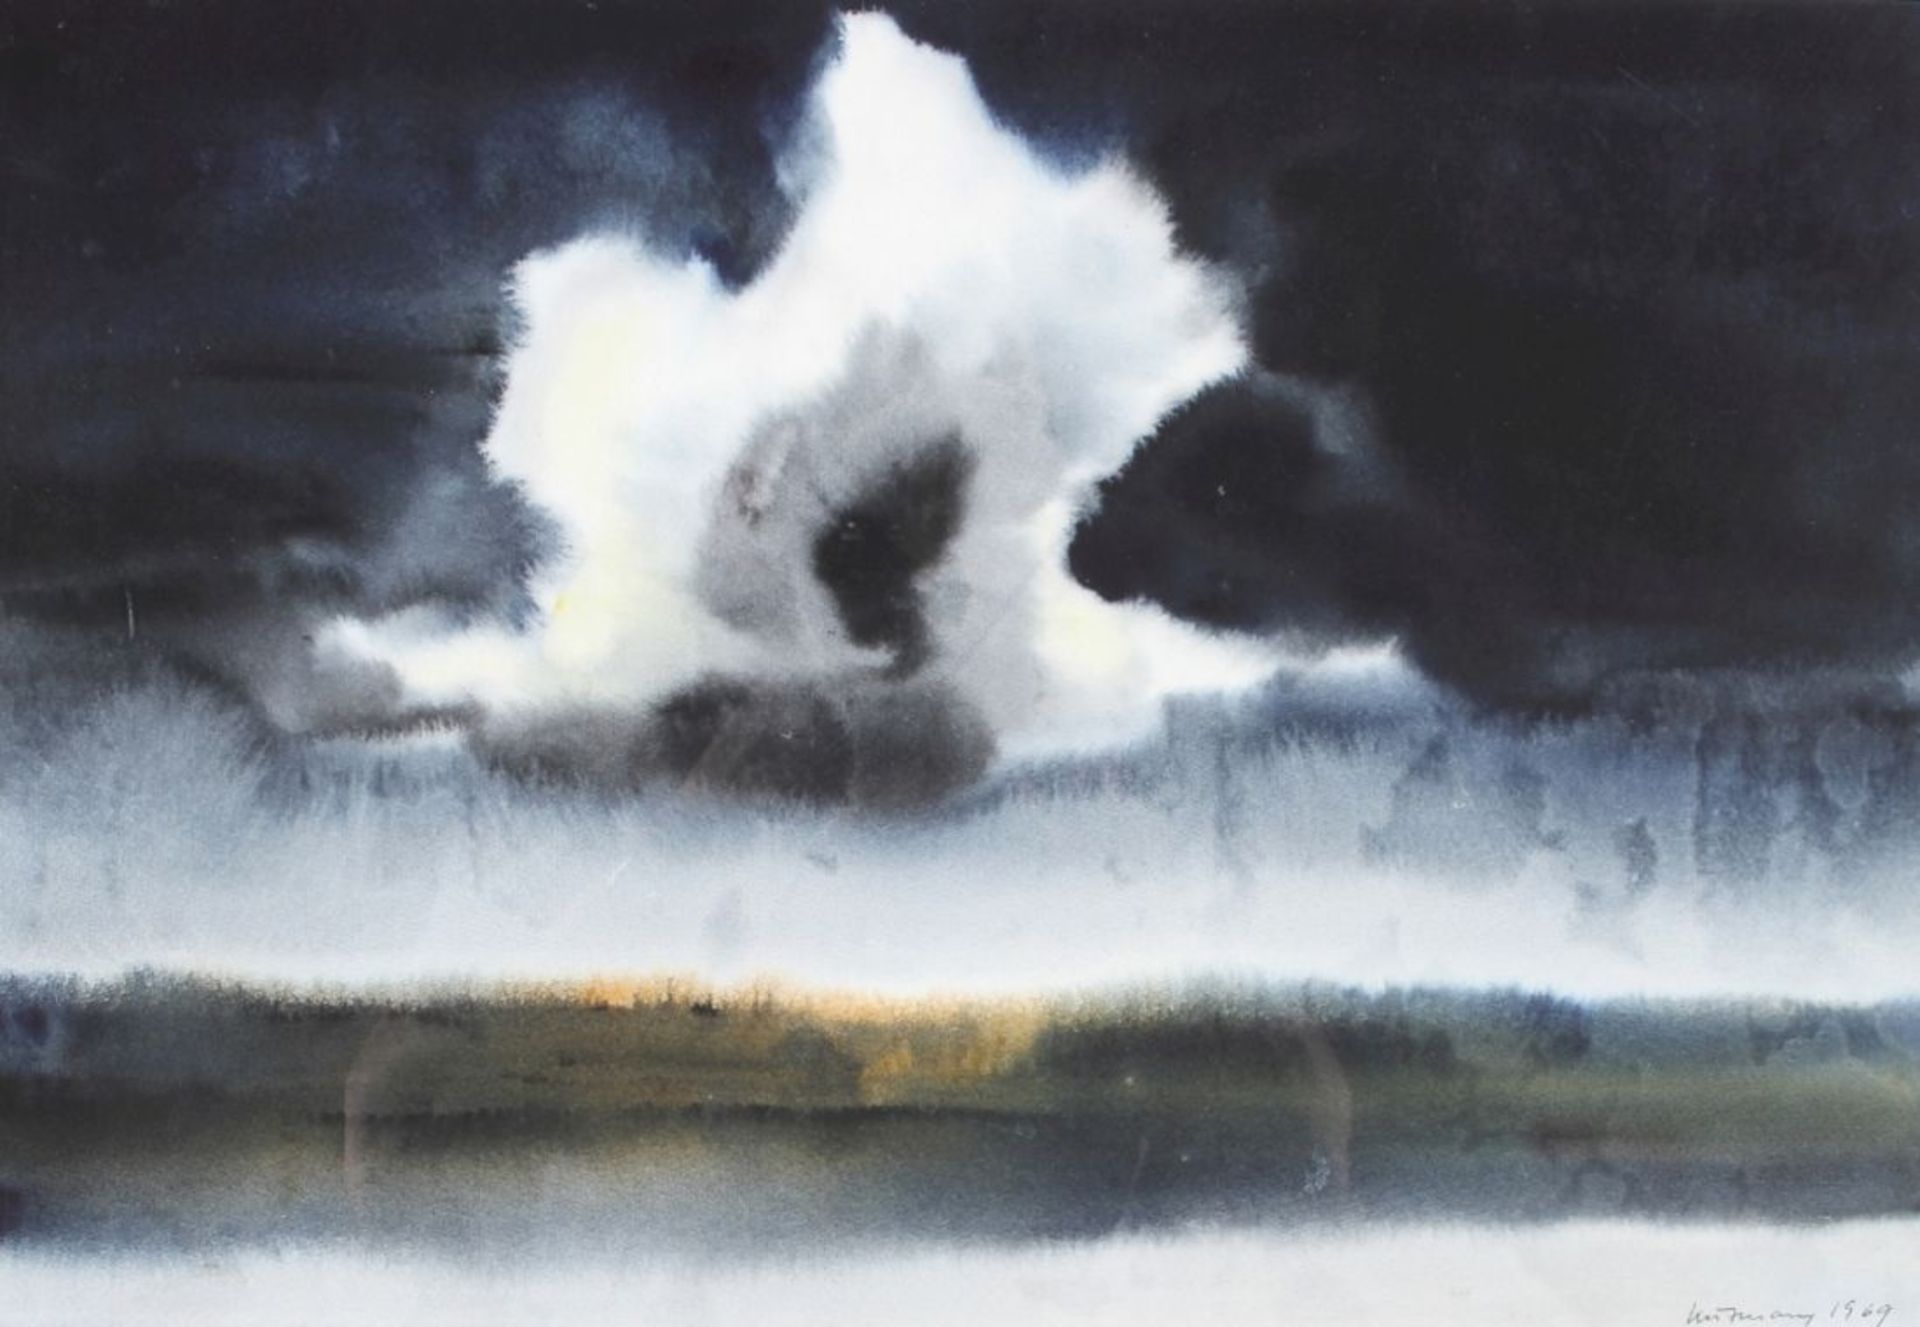 Unleserlich signierender Künstler, 2. Hälfte 20. Jh. "Ohne Titel", Pastell, dat. 1969, 36x 52 cm